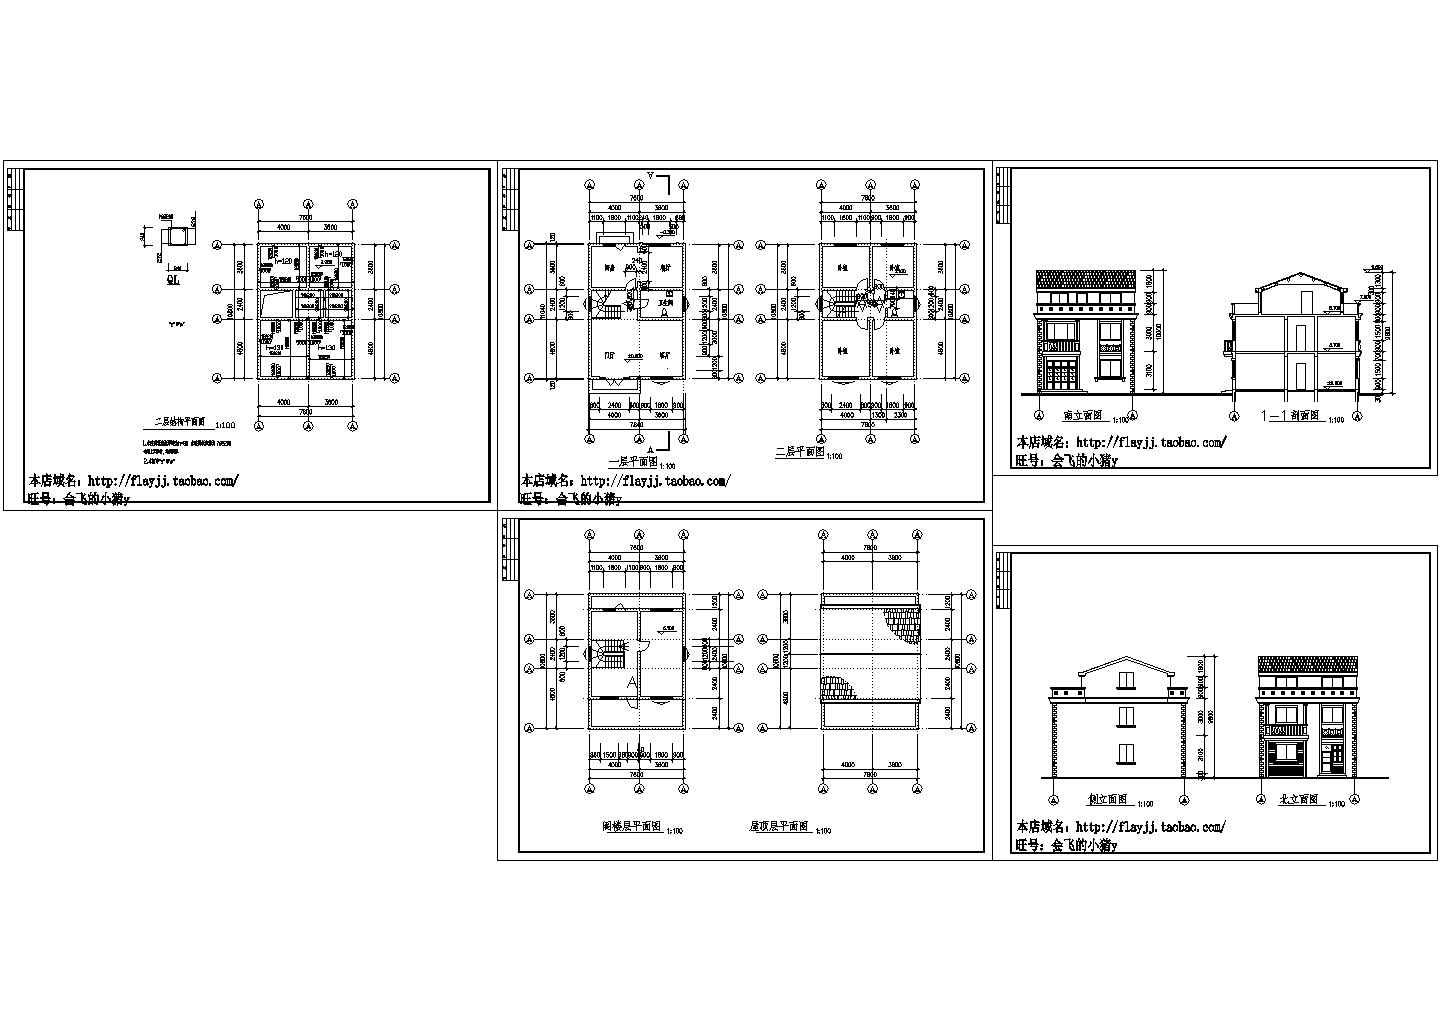 长11.04米 宽7.84米 2+1阁楼层简单小别墅建筑方案设计图